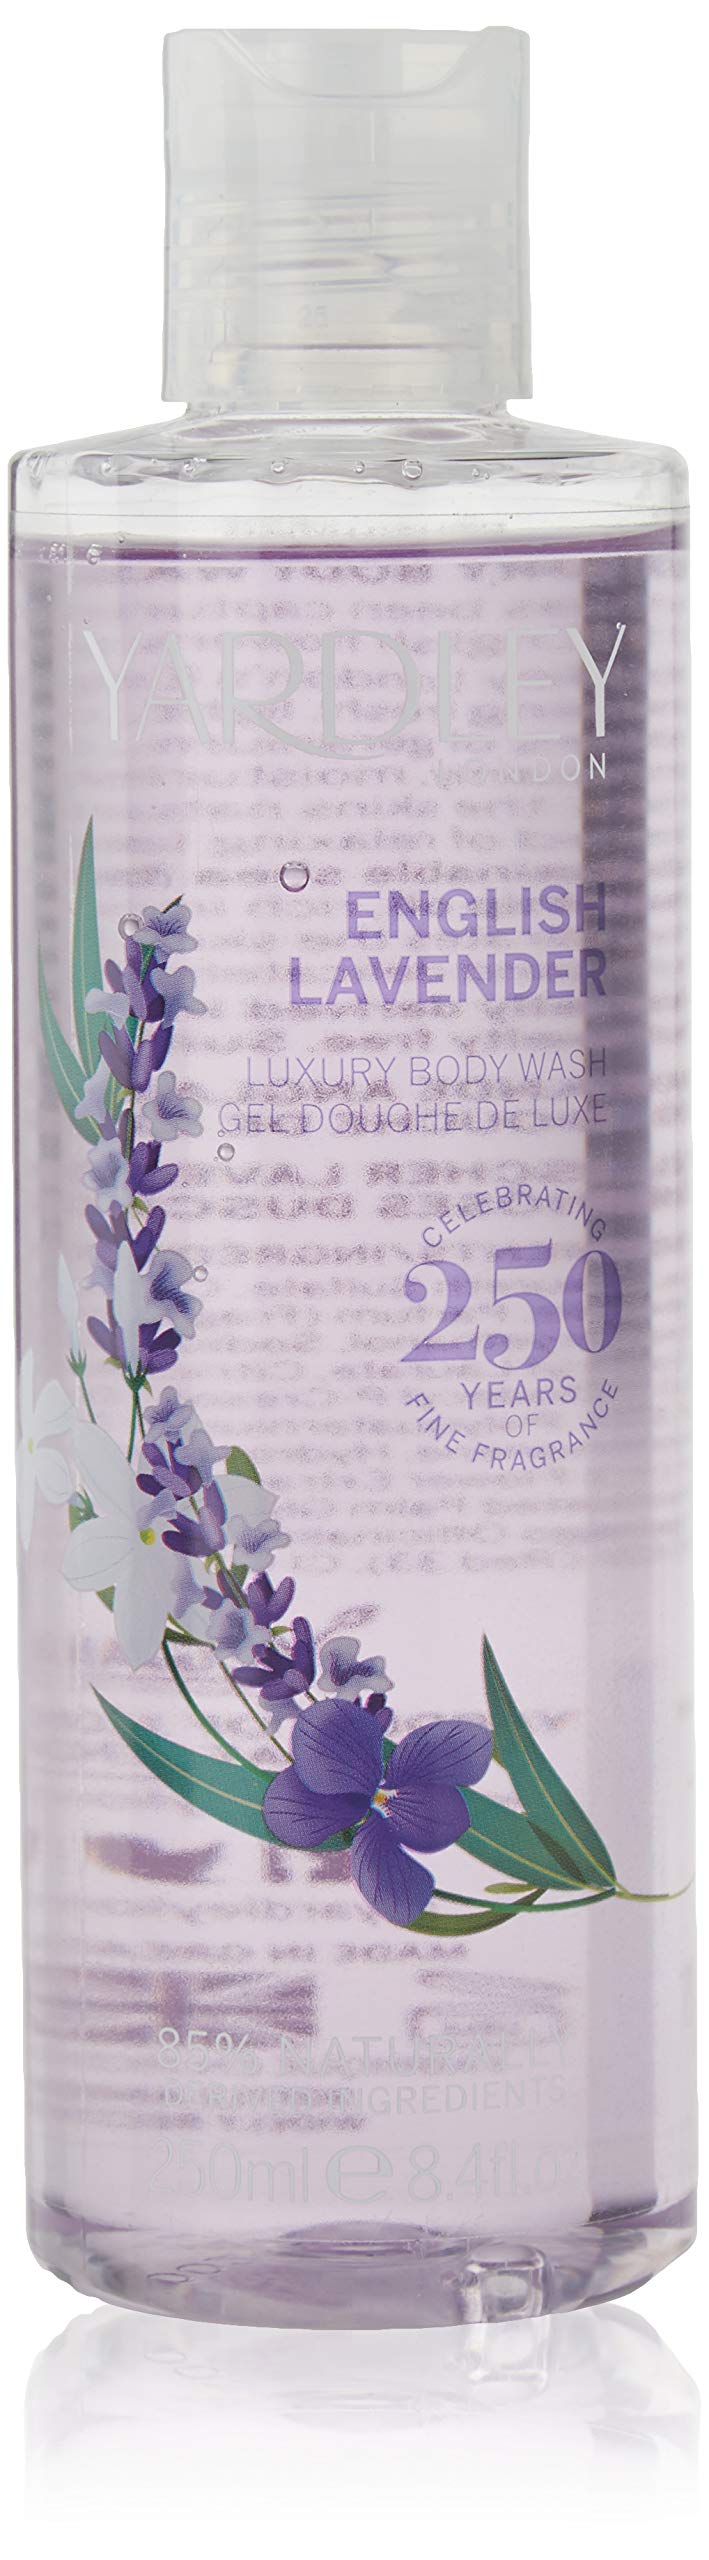 Yardley Of London Yardley English Lavender Luxury Body Wash 8.4 Oz/ 250 Ml for Women By Yardley Of London, 12 Fl Oz